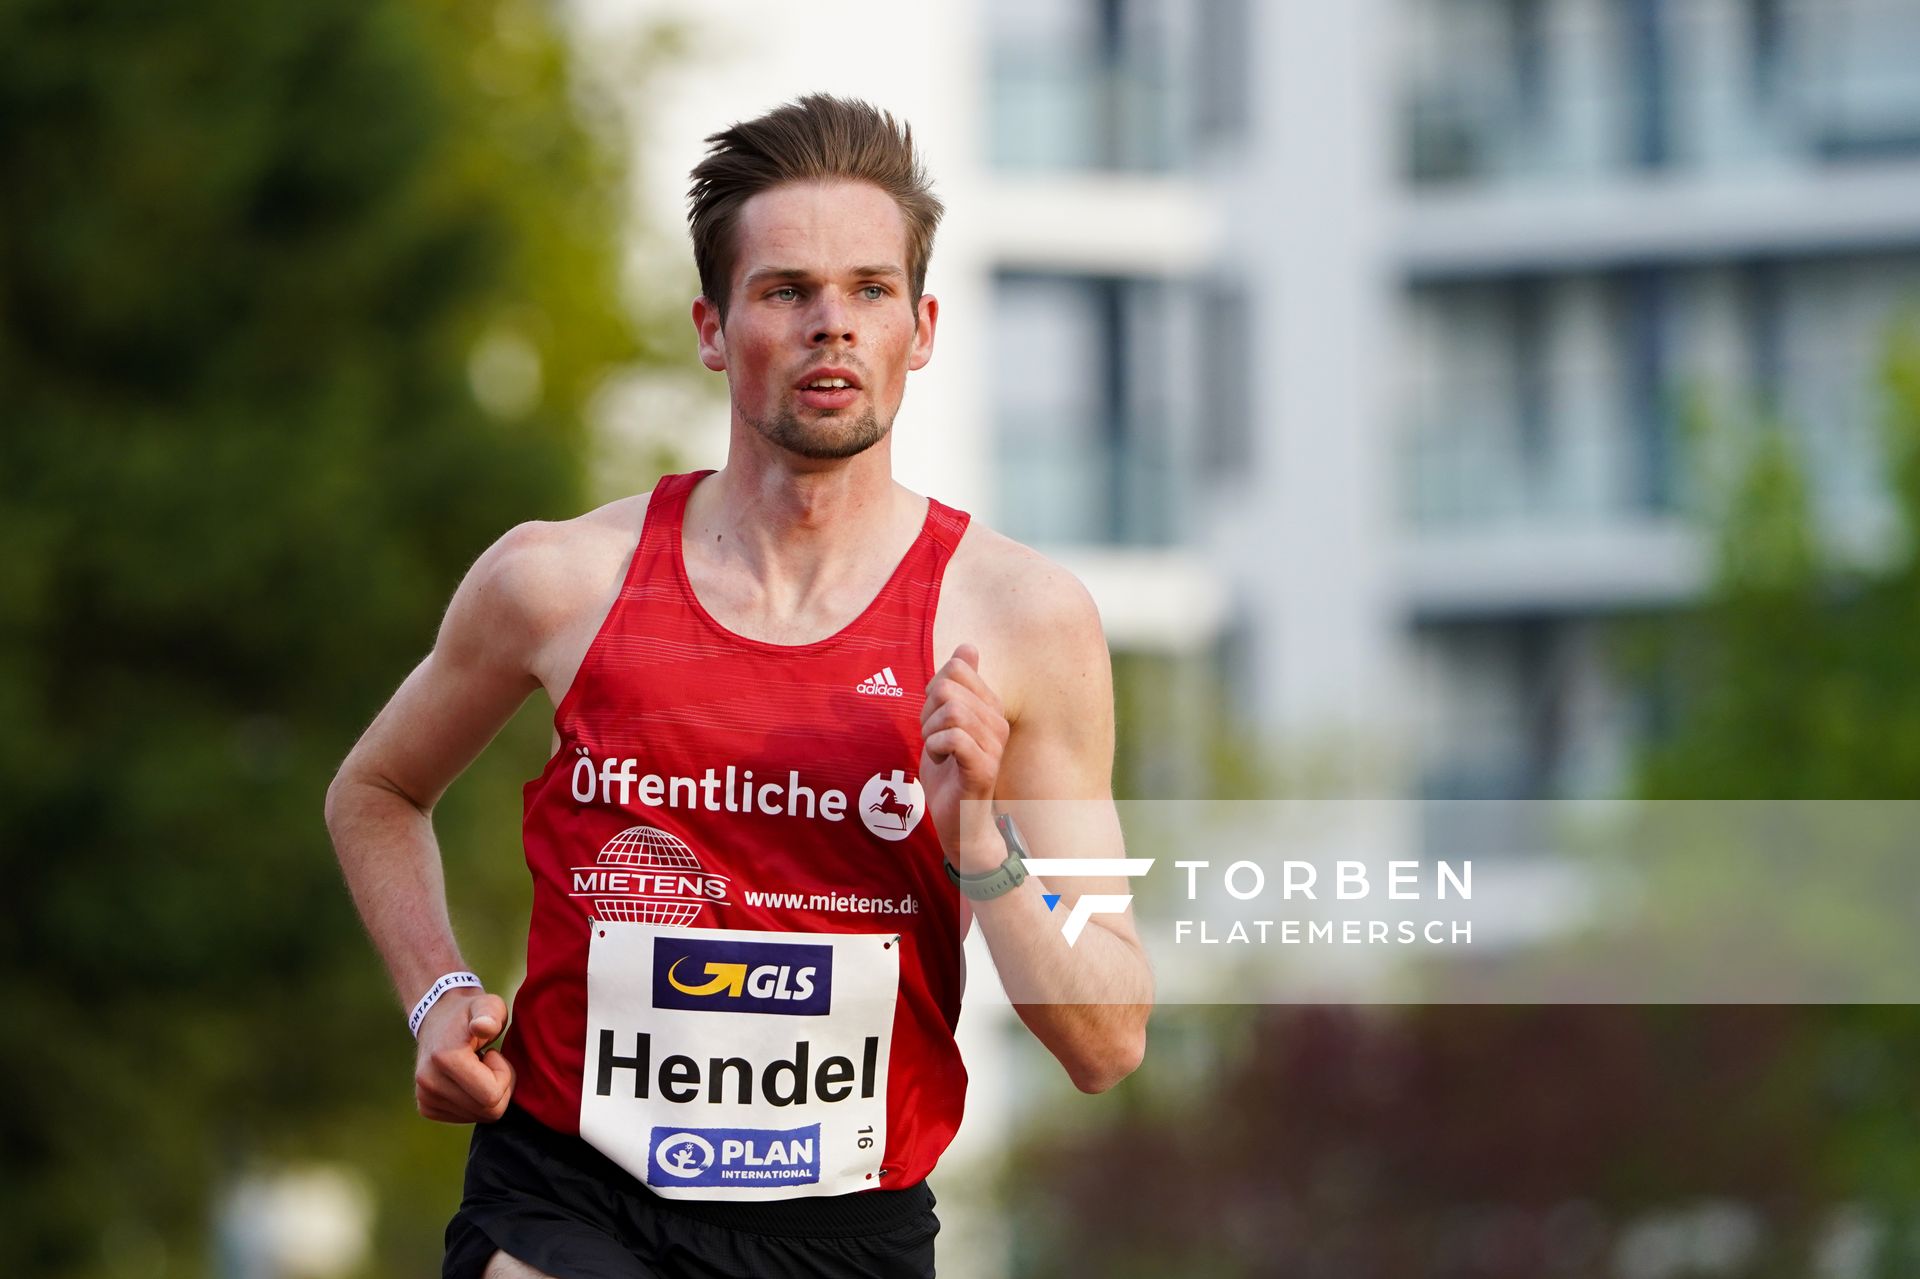 Sebastian Hendel (LG Braunschweig) am 01.05.2021 waehrend der Deutschen Meisterschaften Langstrecke im Otto-Schott-Sportzentrum in Mainz